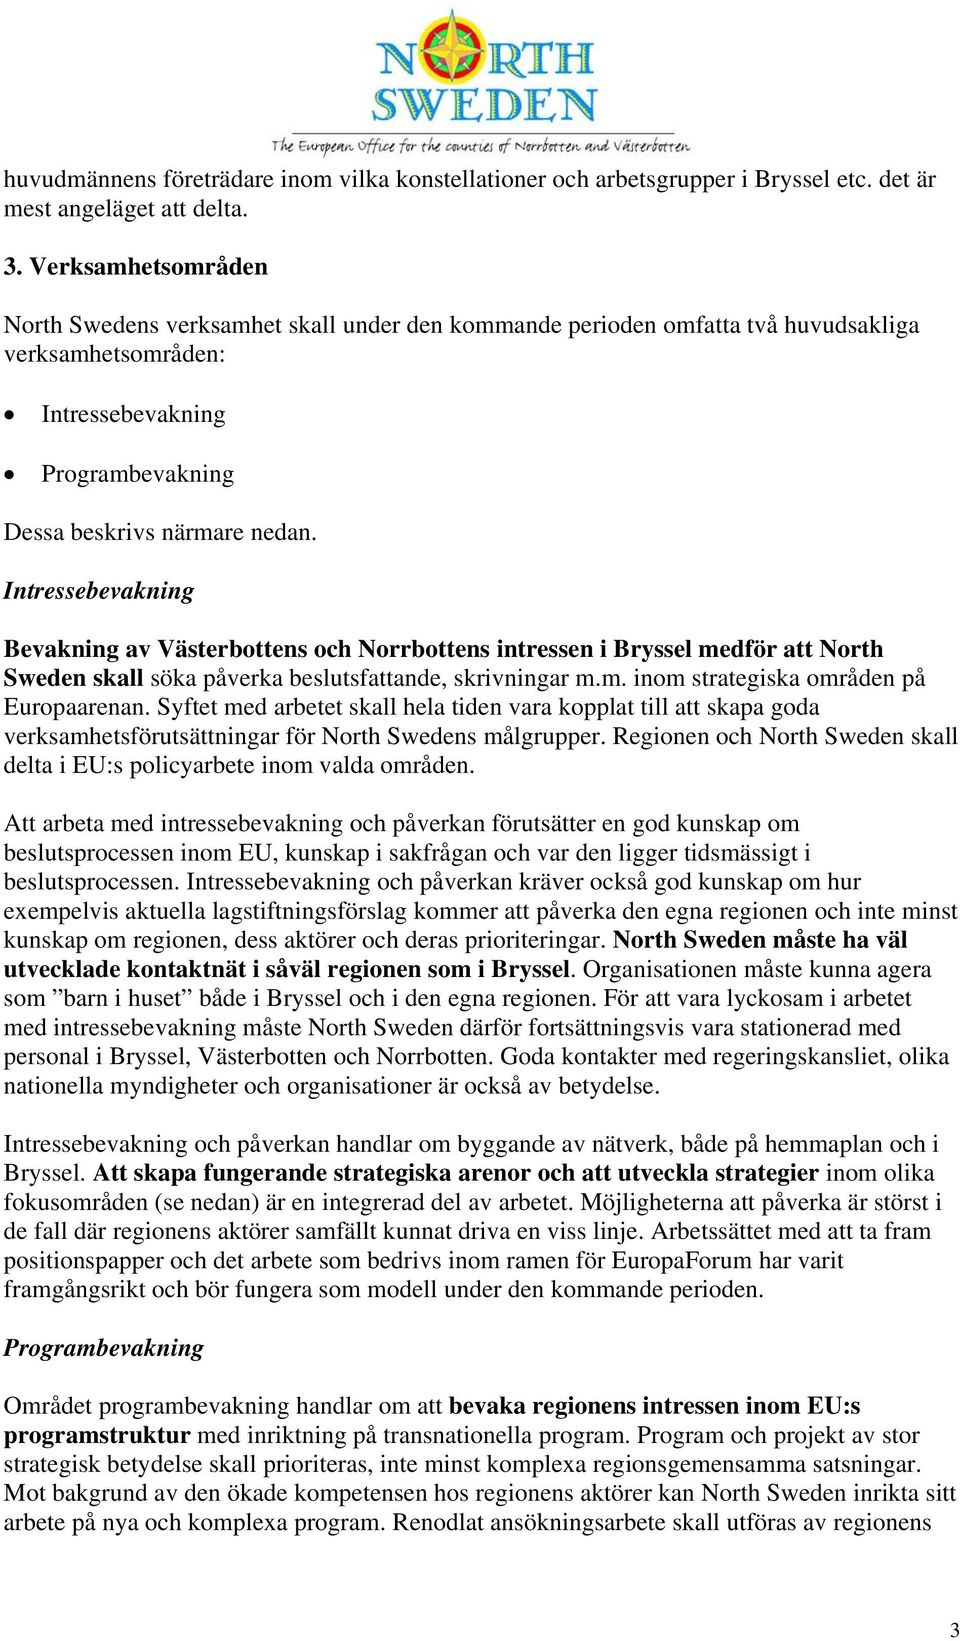 Intressebevakning Bevakning av Västerbottens och Norrbottens intressen i Bryssel medför att North Sweden skall söka påverka beslutsfattande, skrivningar m.m. inom strategiska områden på Europaarenan.